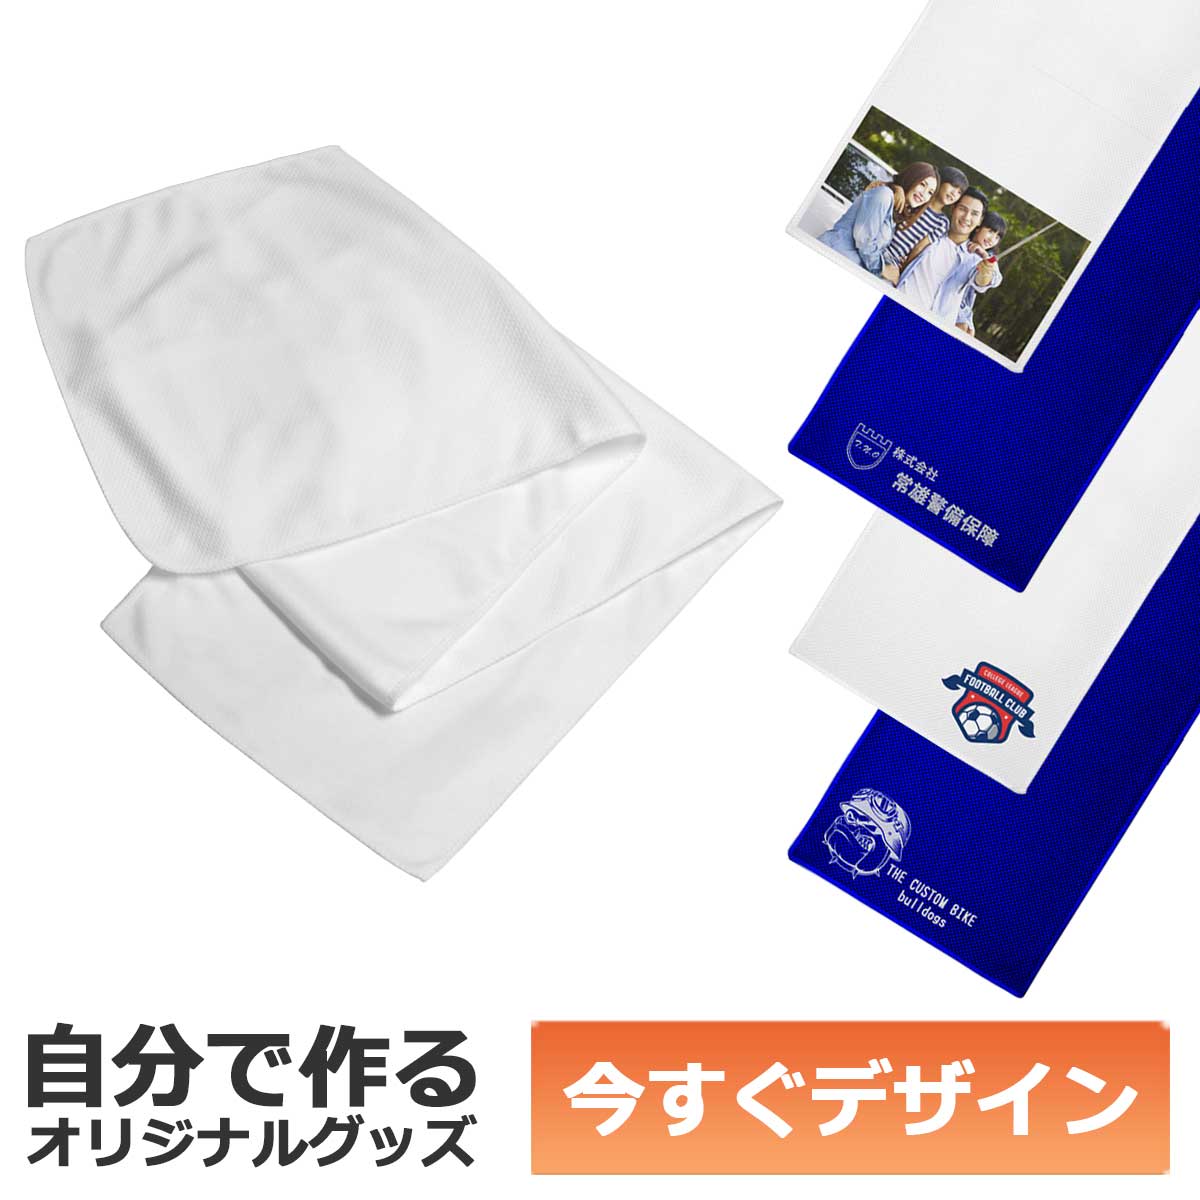 1枚から作れる 自分でデザイン オリジナル 涼感マフラータオル 巾着袋付属 ホワイト メール便可